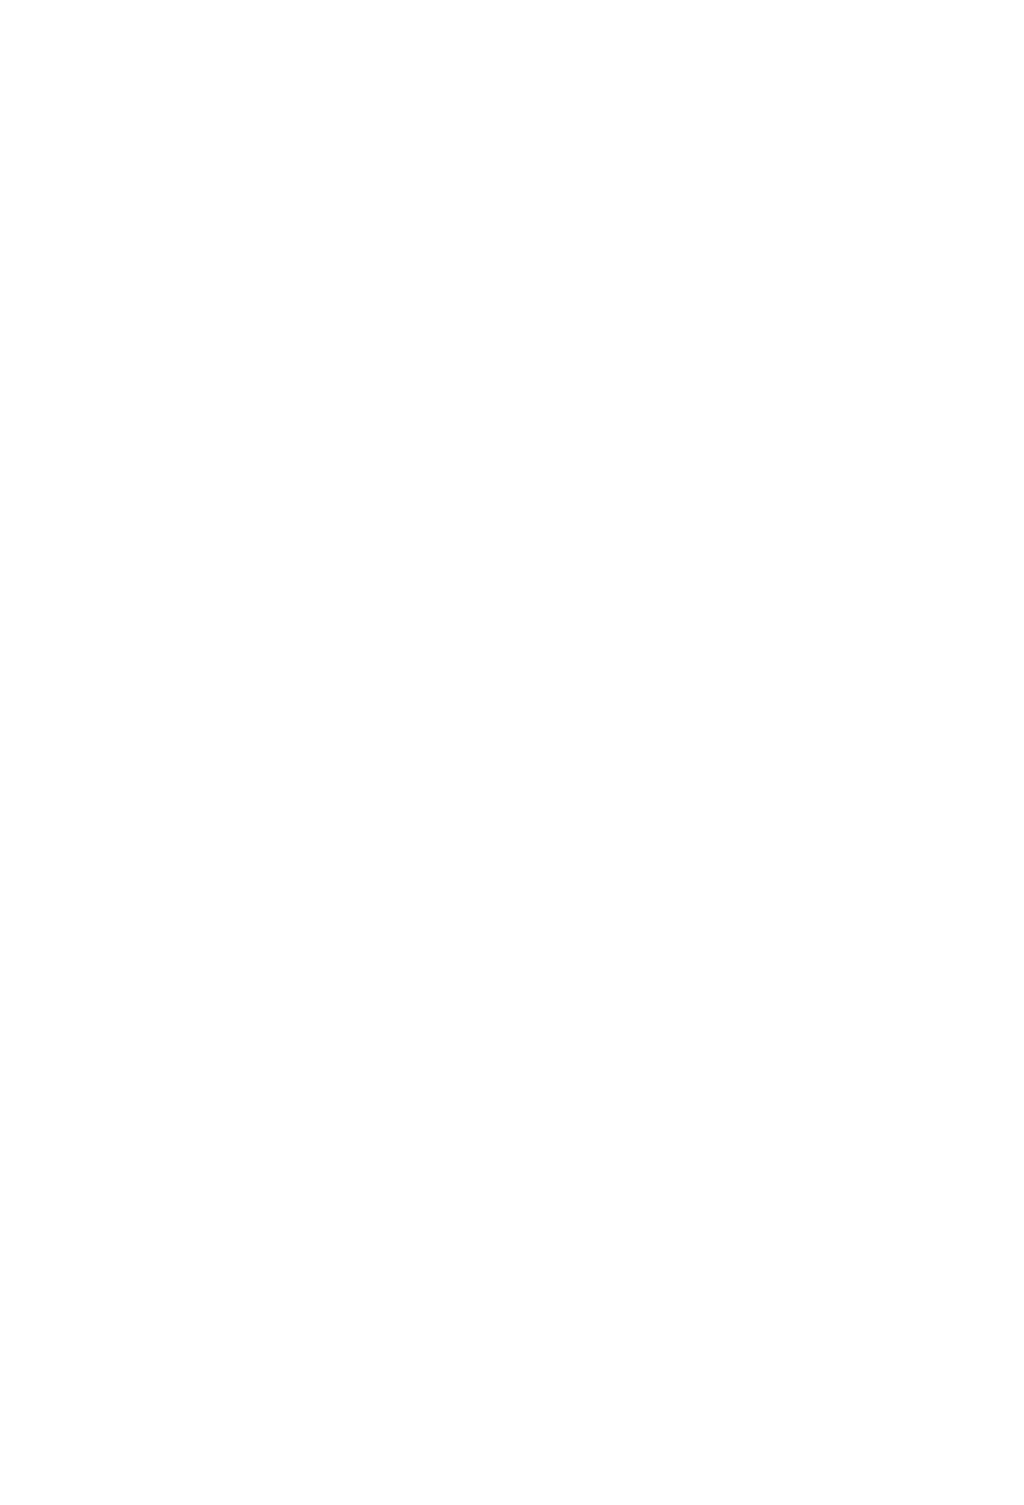 Grammarnazi - scritta bianca